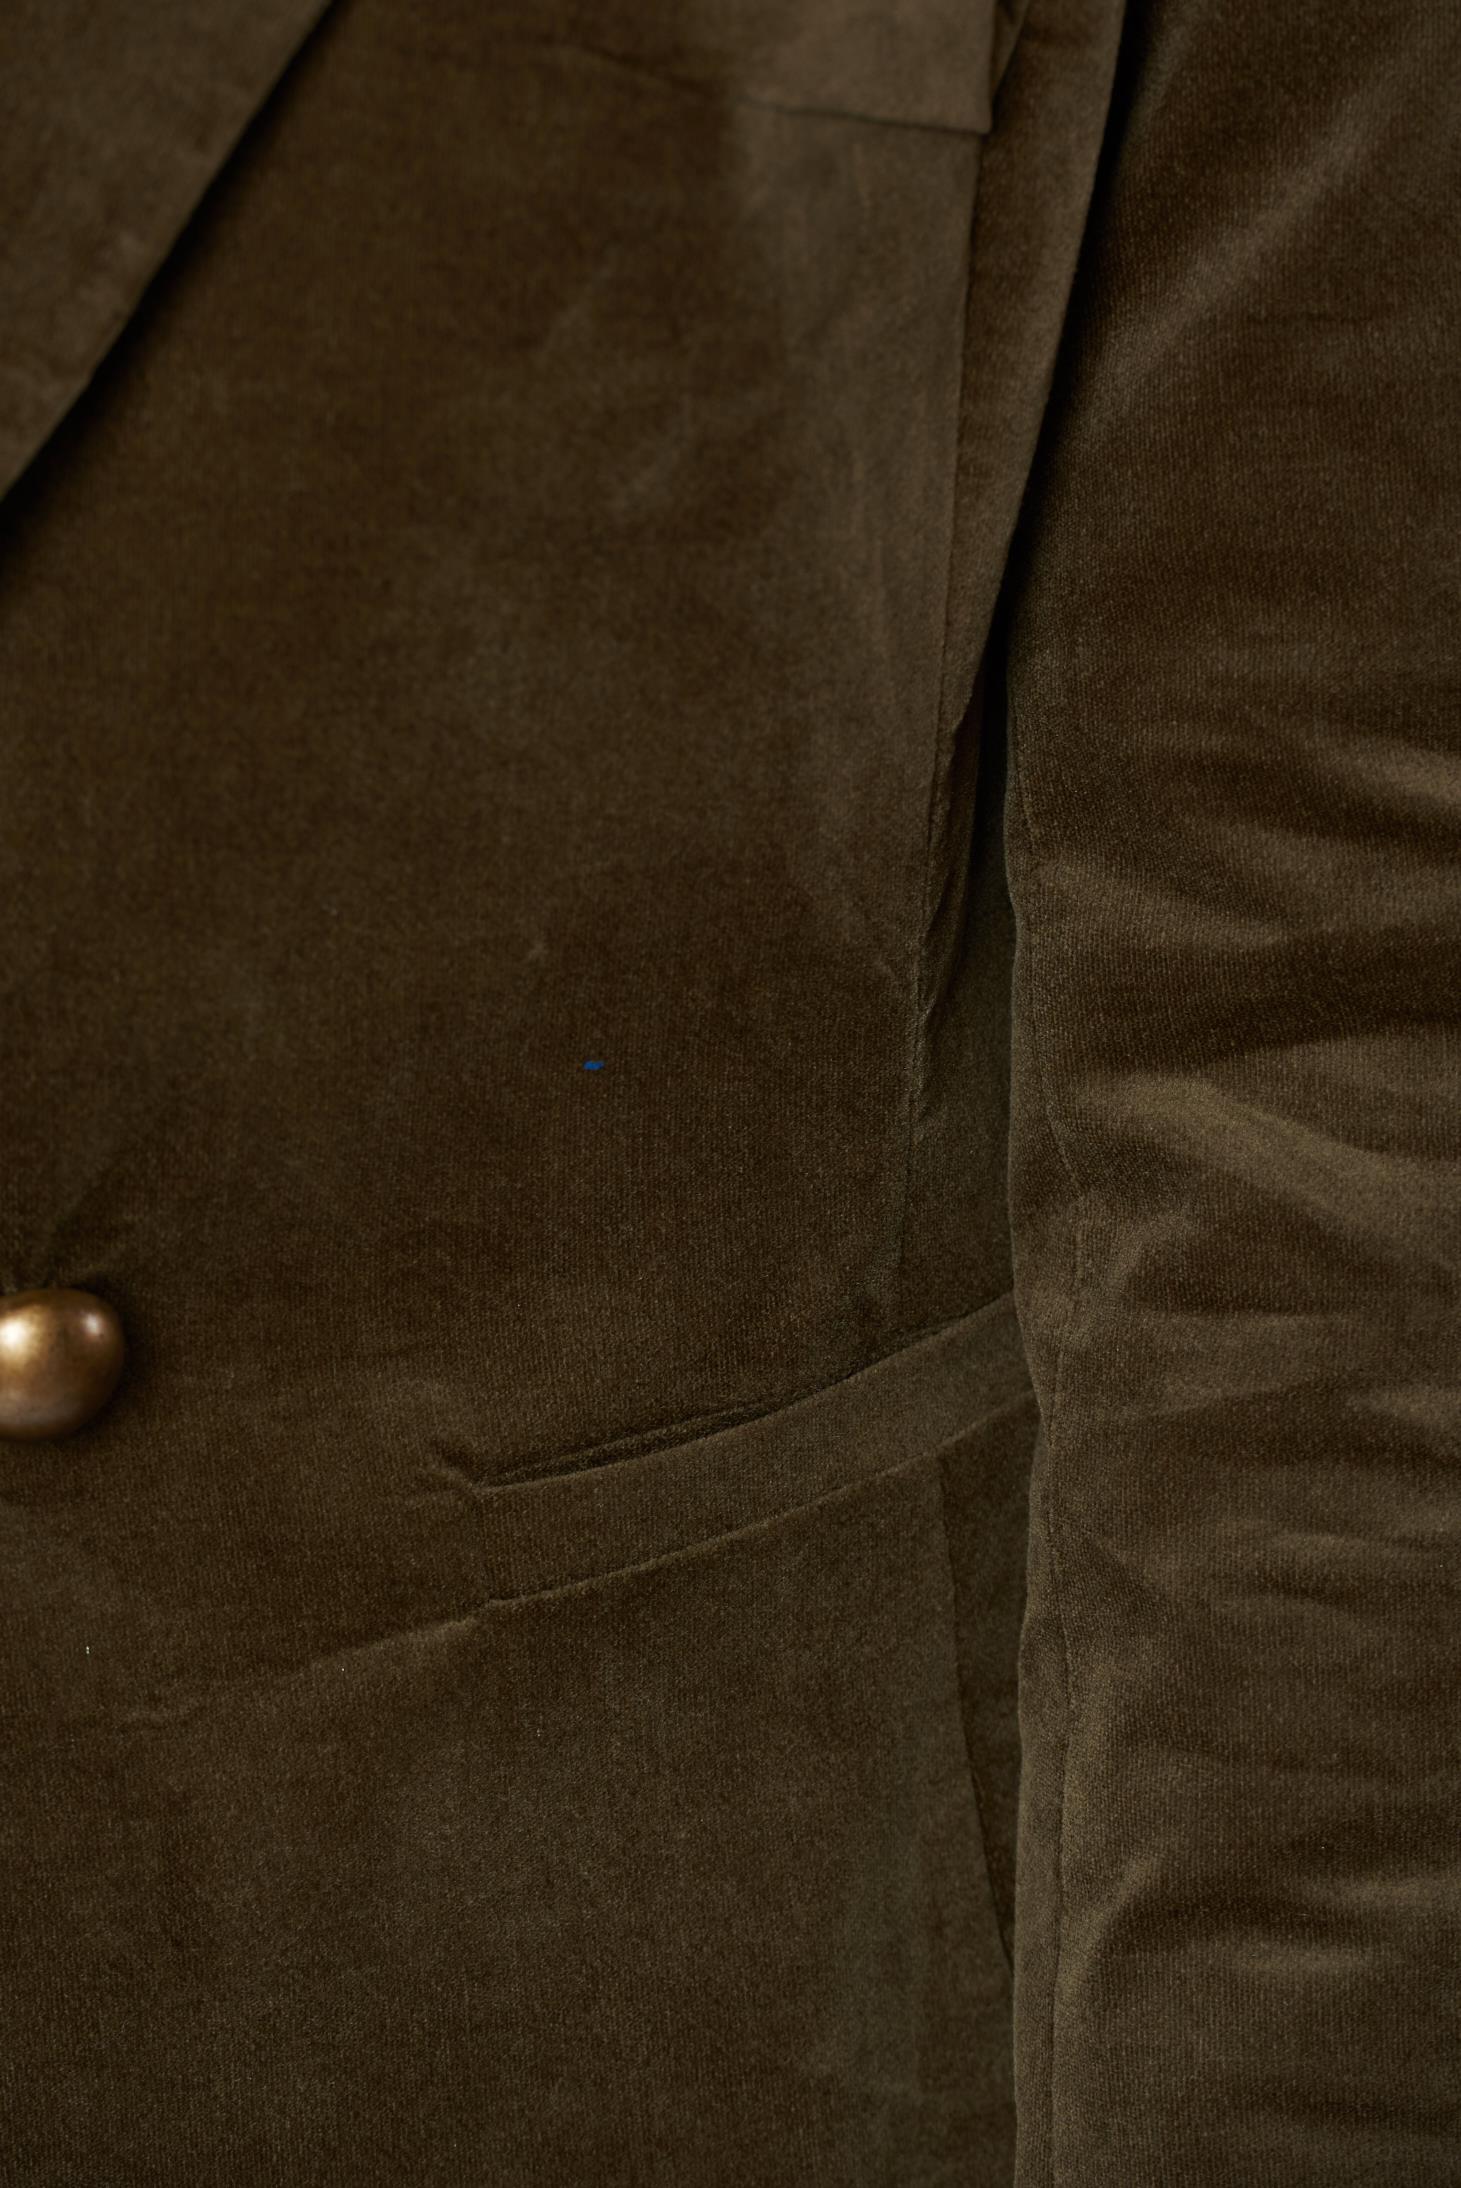 LaDonna darkgreen office velvet jacket with pockets